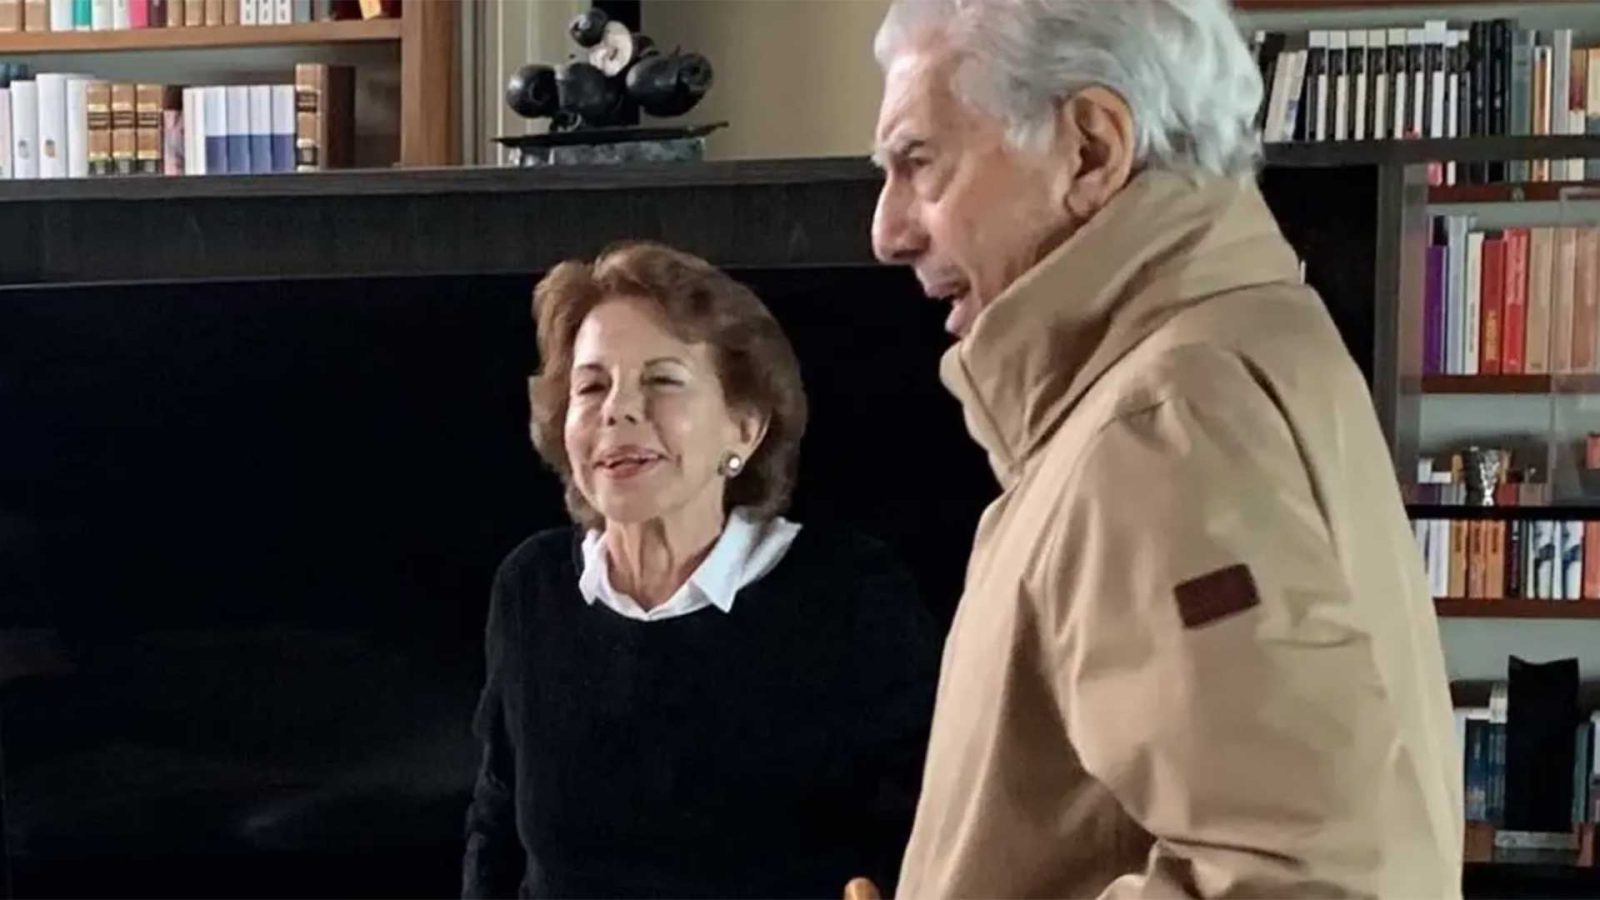 Álvaro Vargas Llosa publica nuevas fotos de sus padres juntos